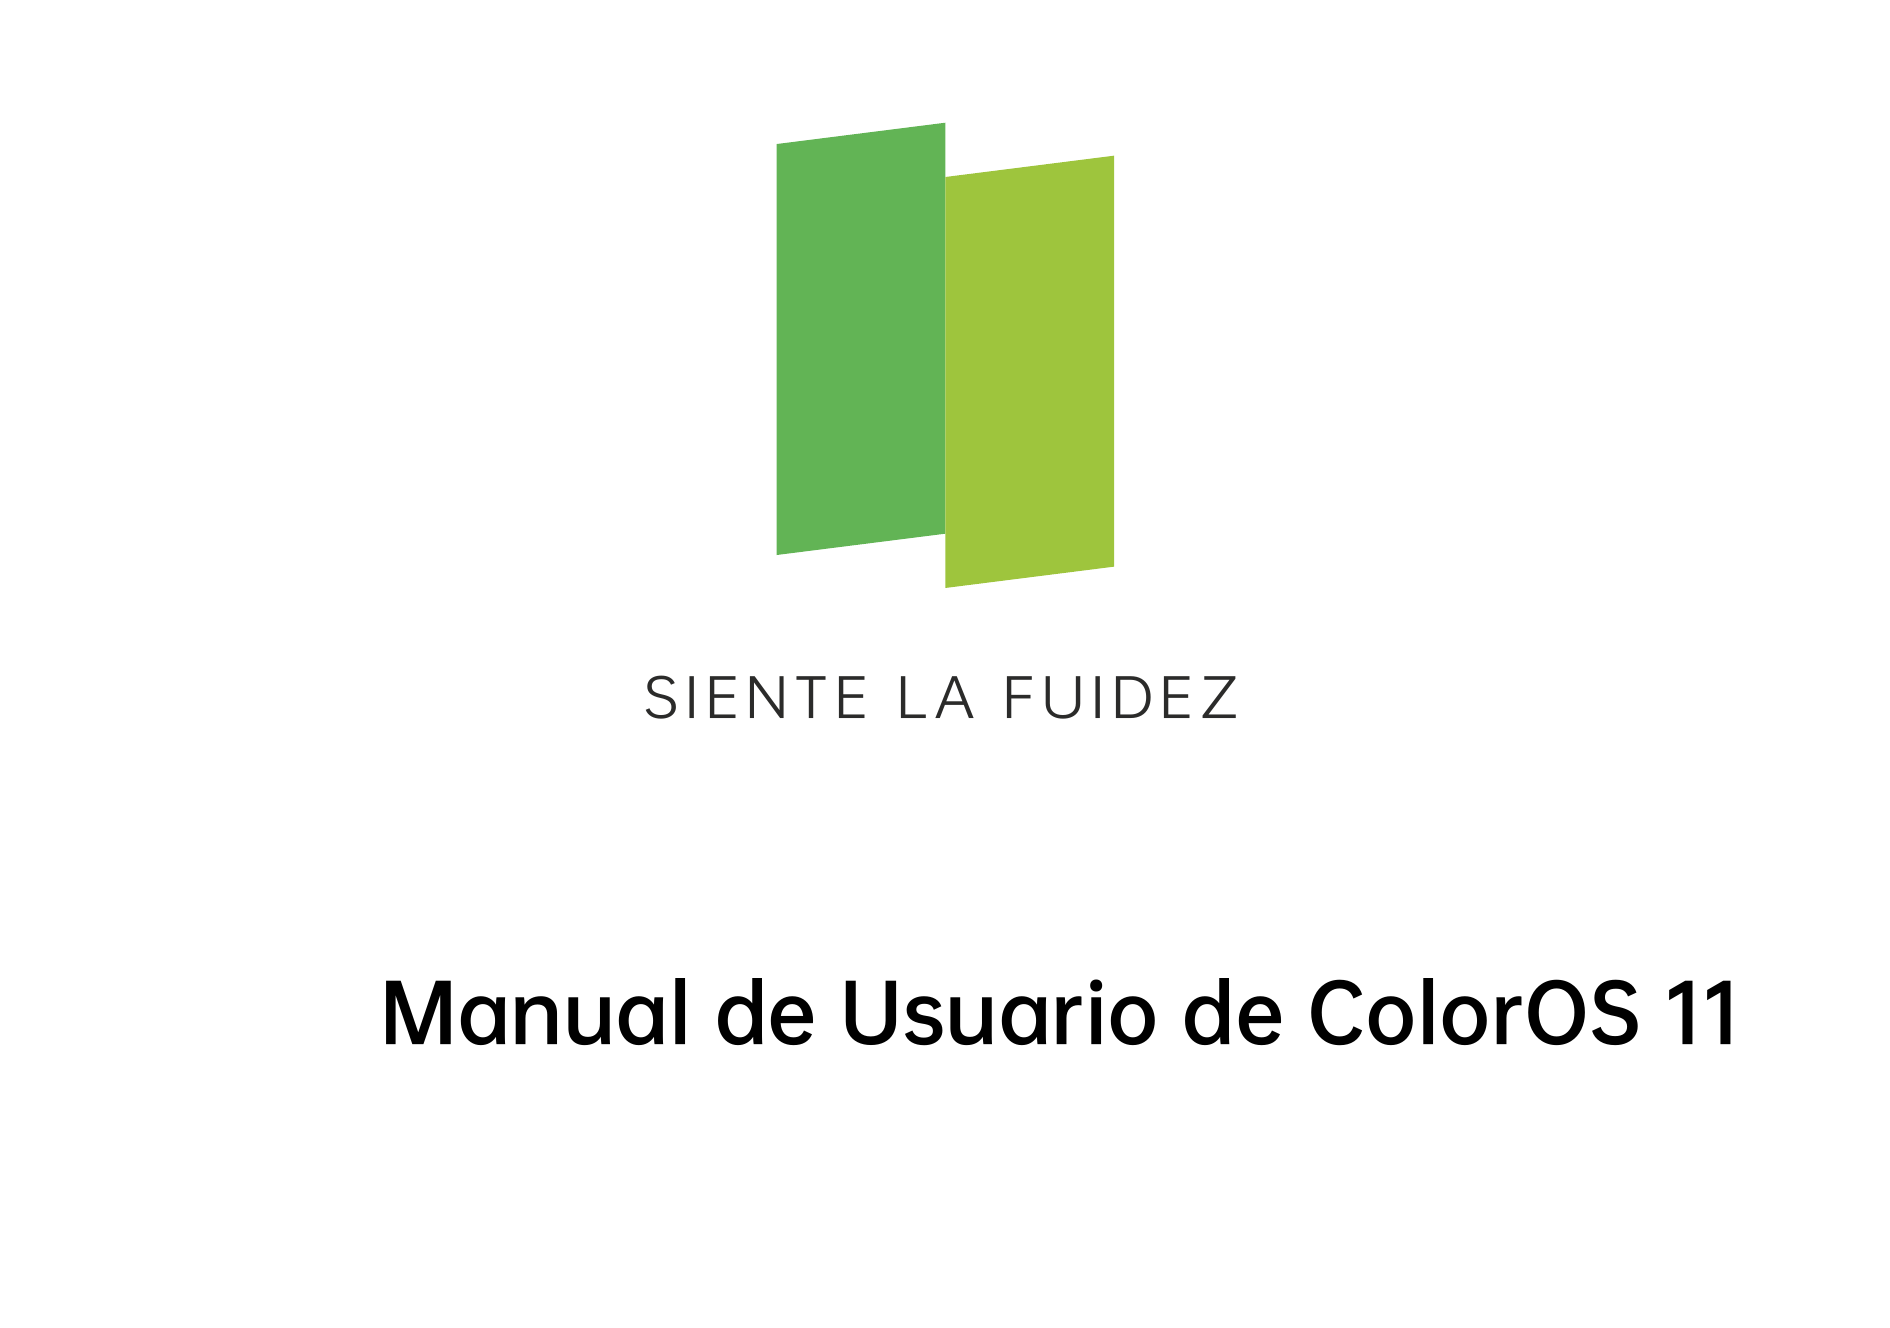 SIENTE LA FUIDEZManual de Usuario de ColorOS 11